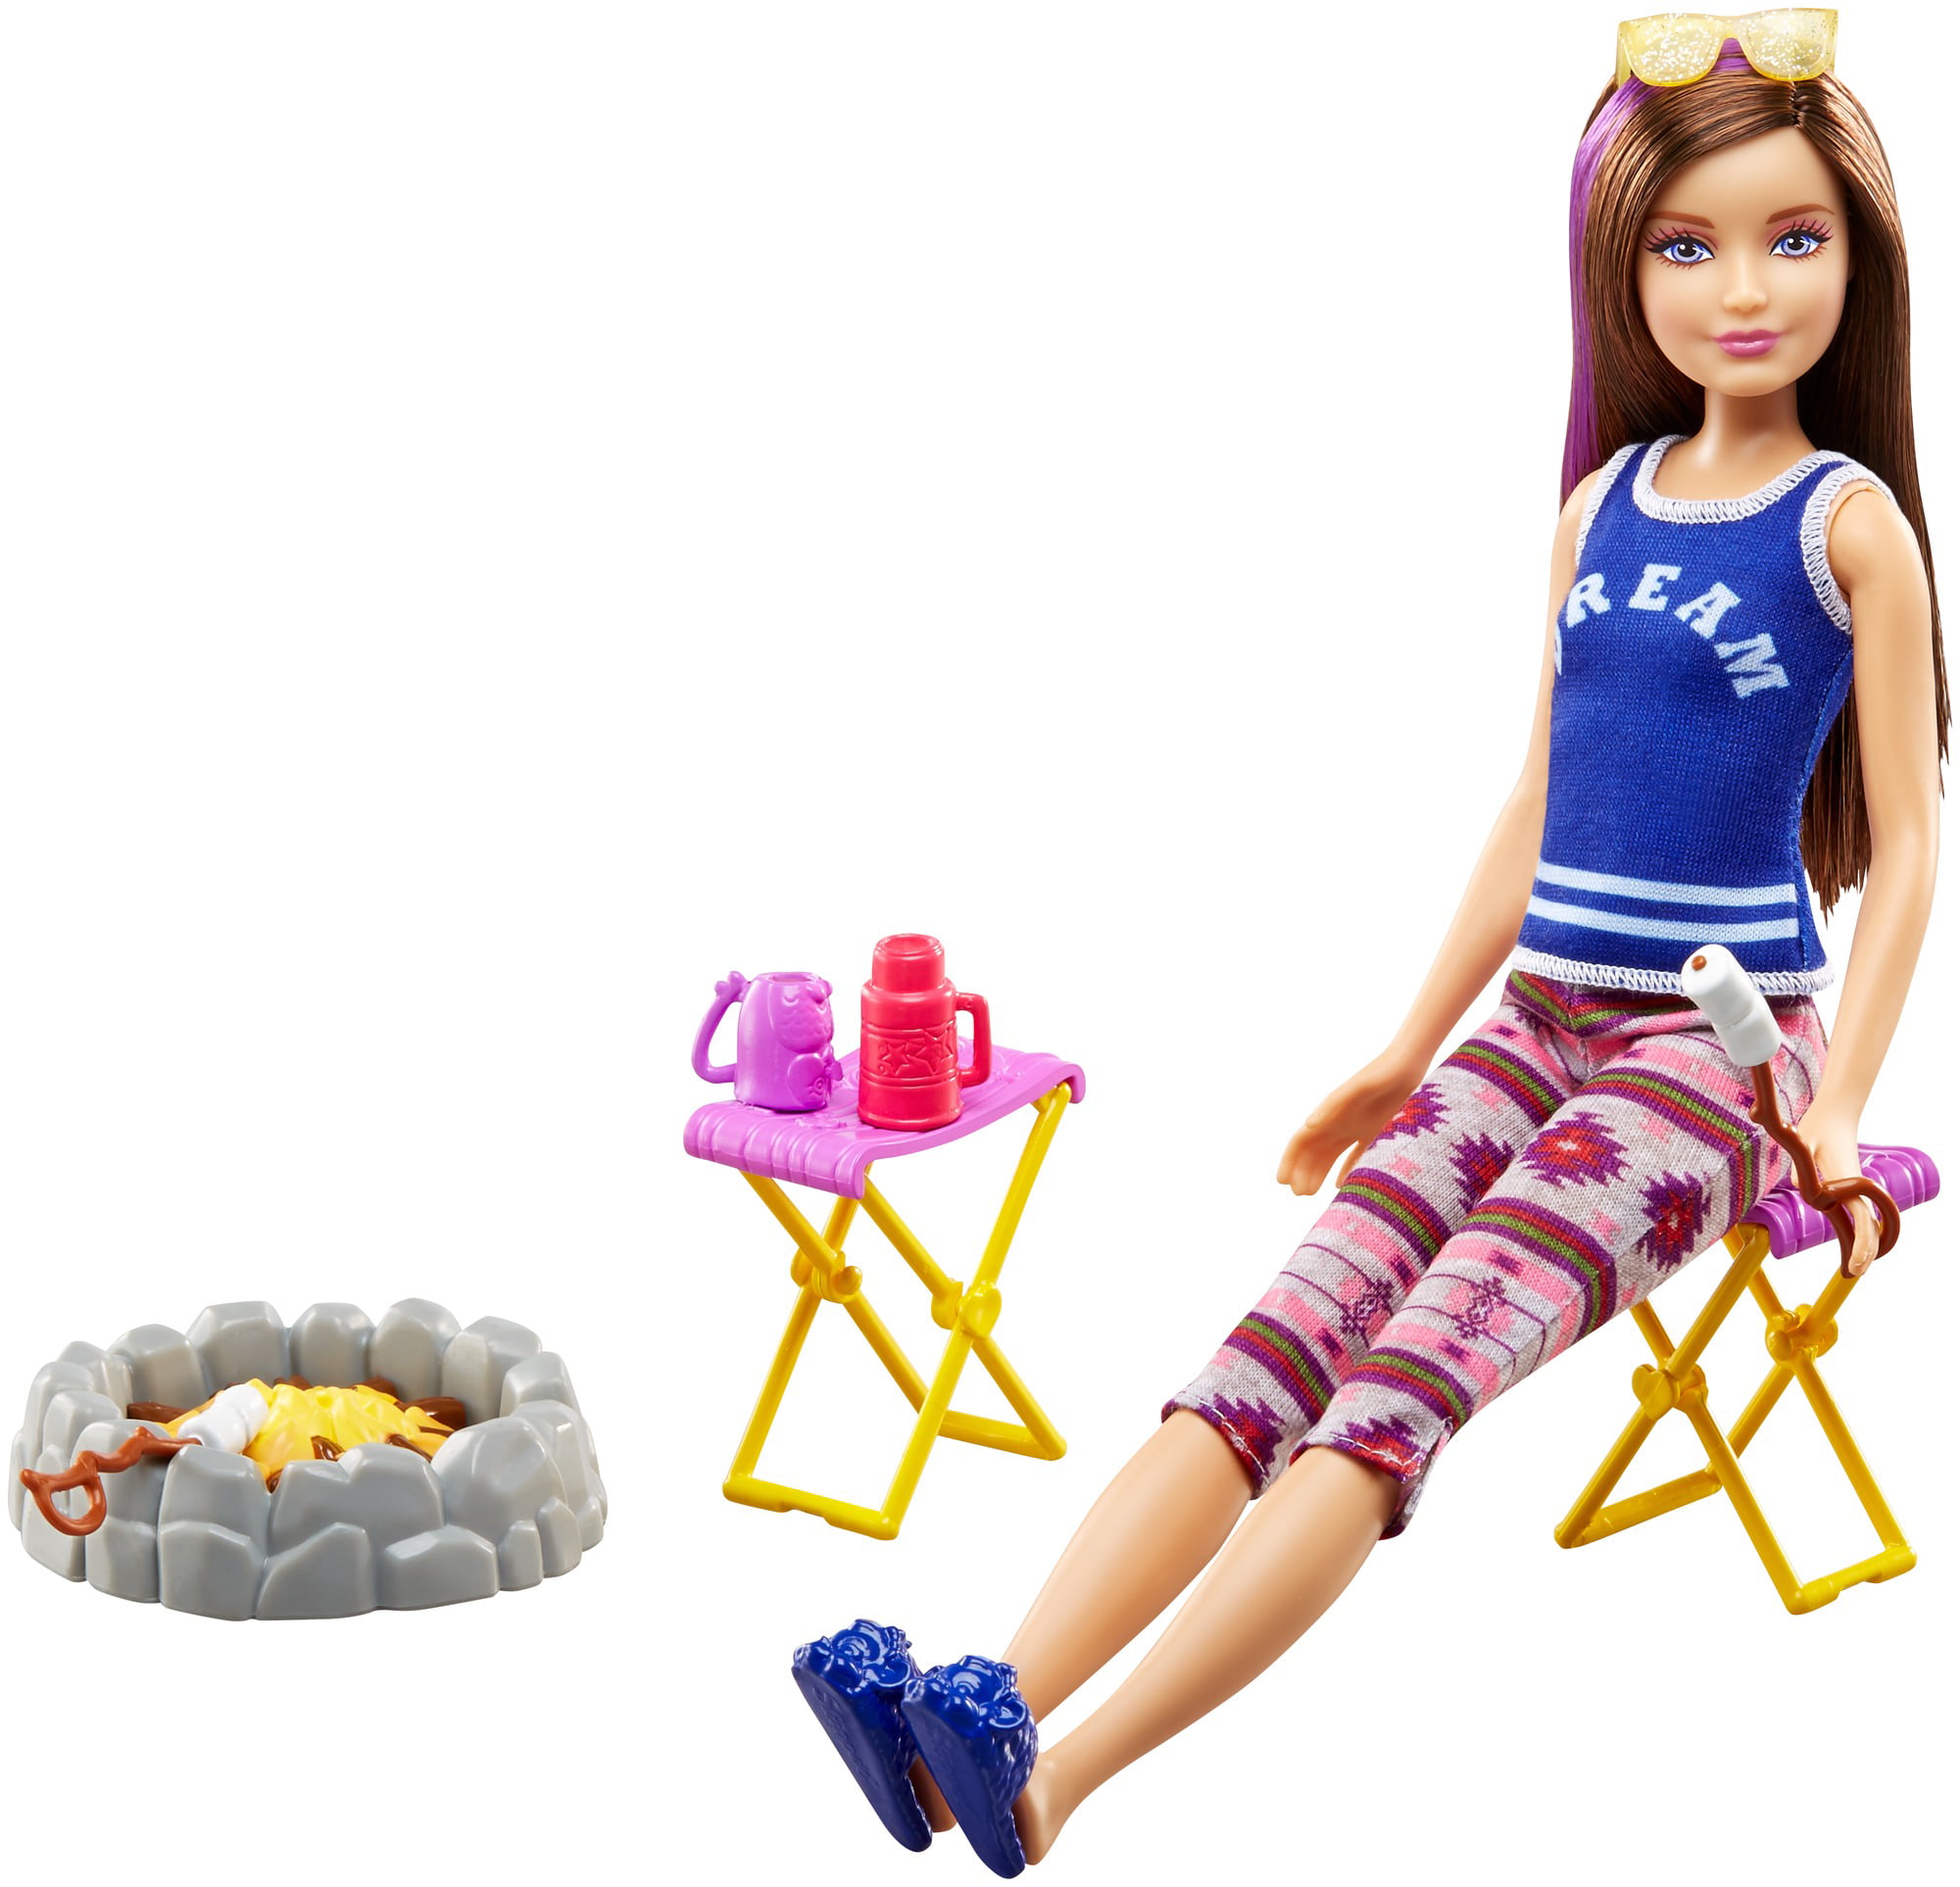 barbie camping set walmart